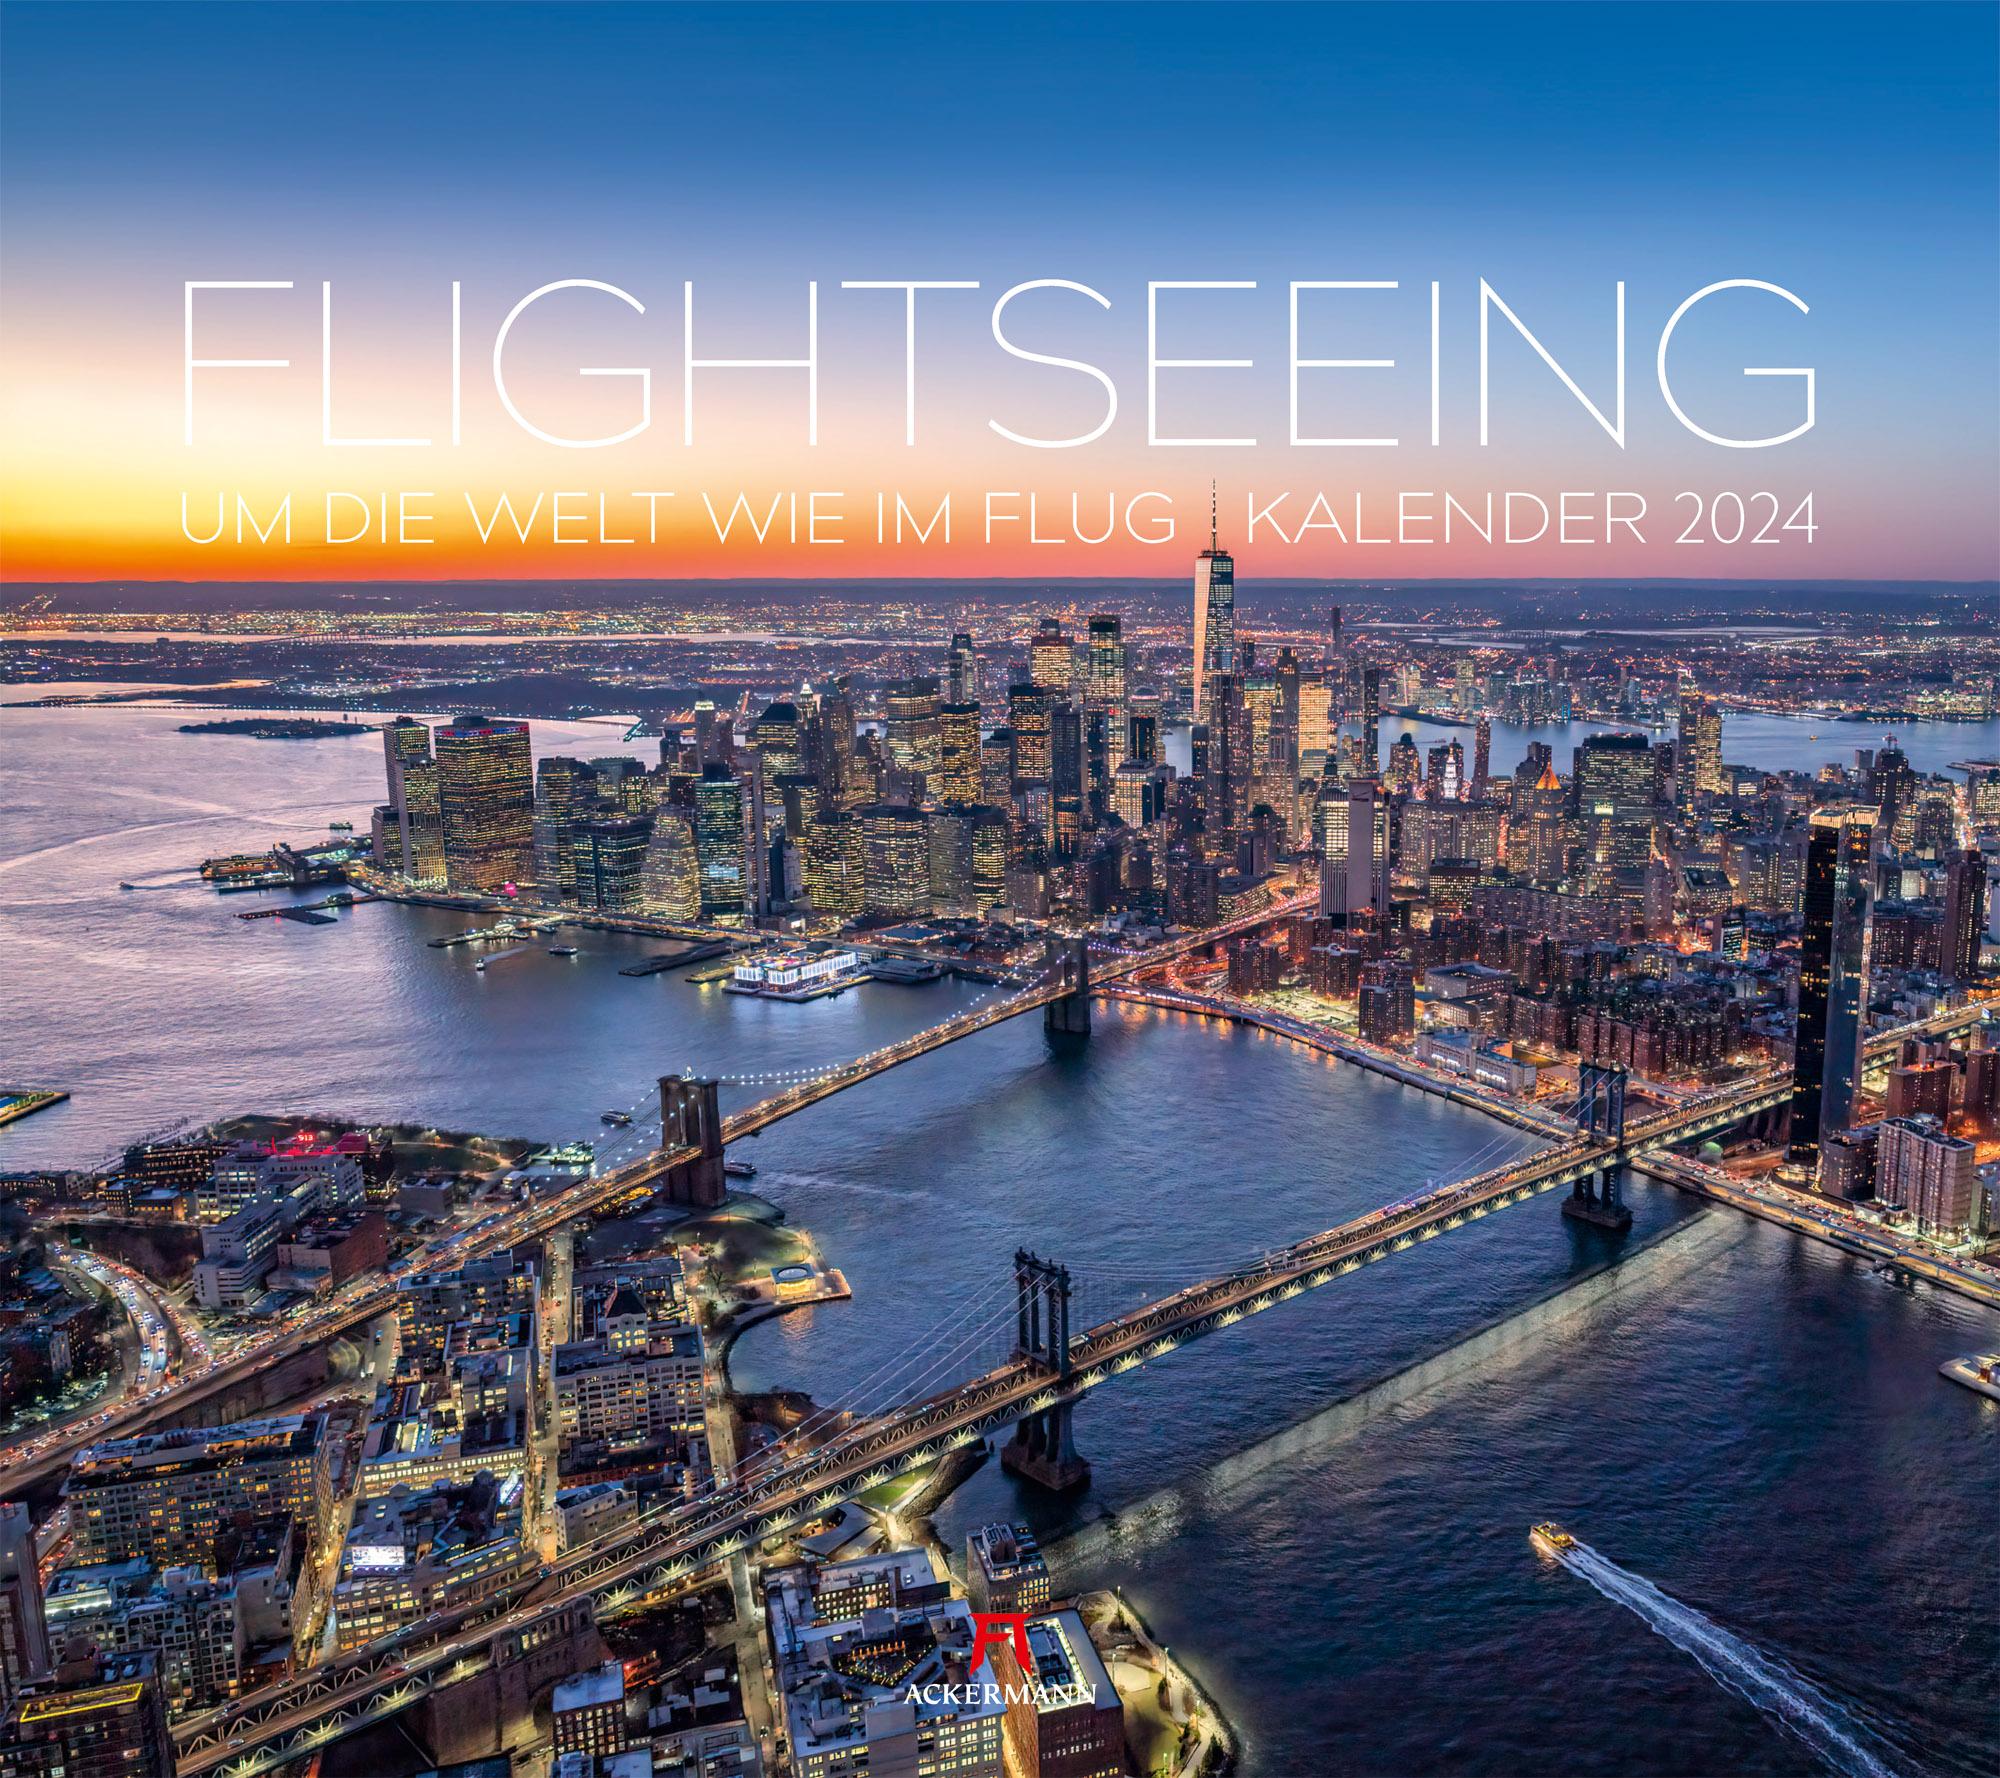 Flightseeing - Um die Welt wie im Flug Kalender 2024 Maße (B/H): 54 x 48 cm, Fotokalender, Dt/engl/frz